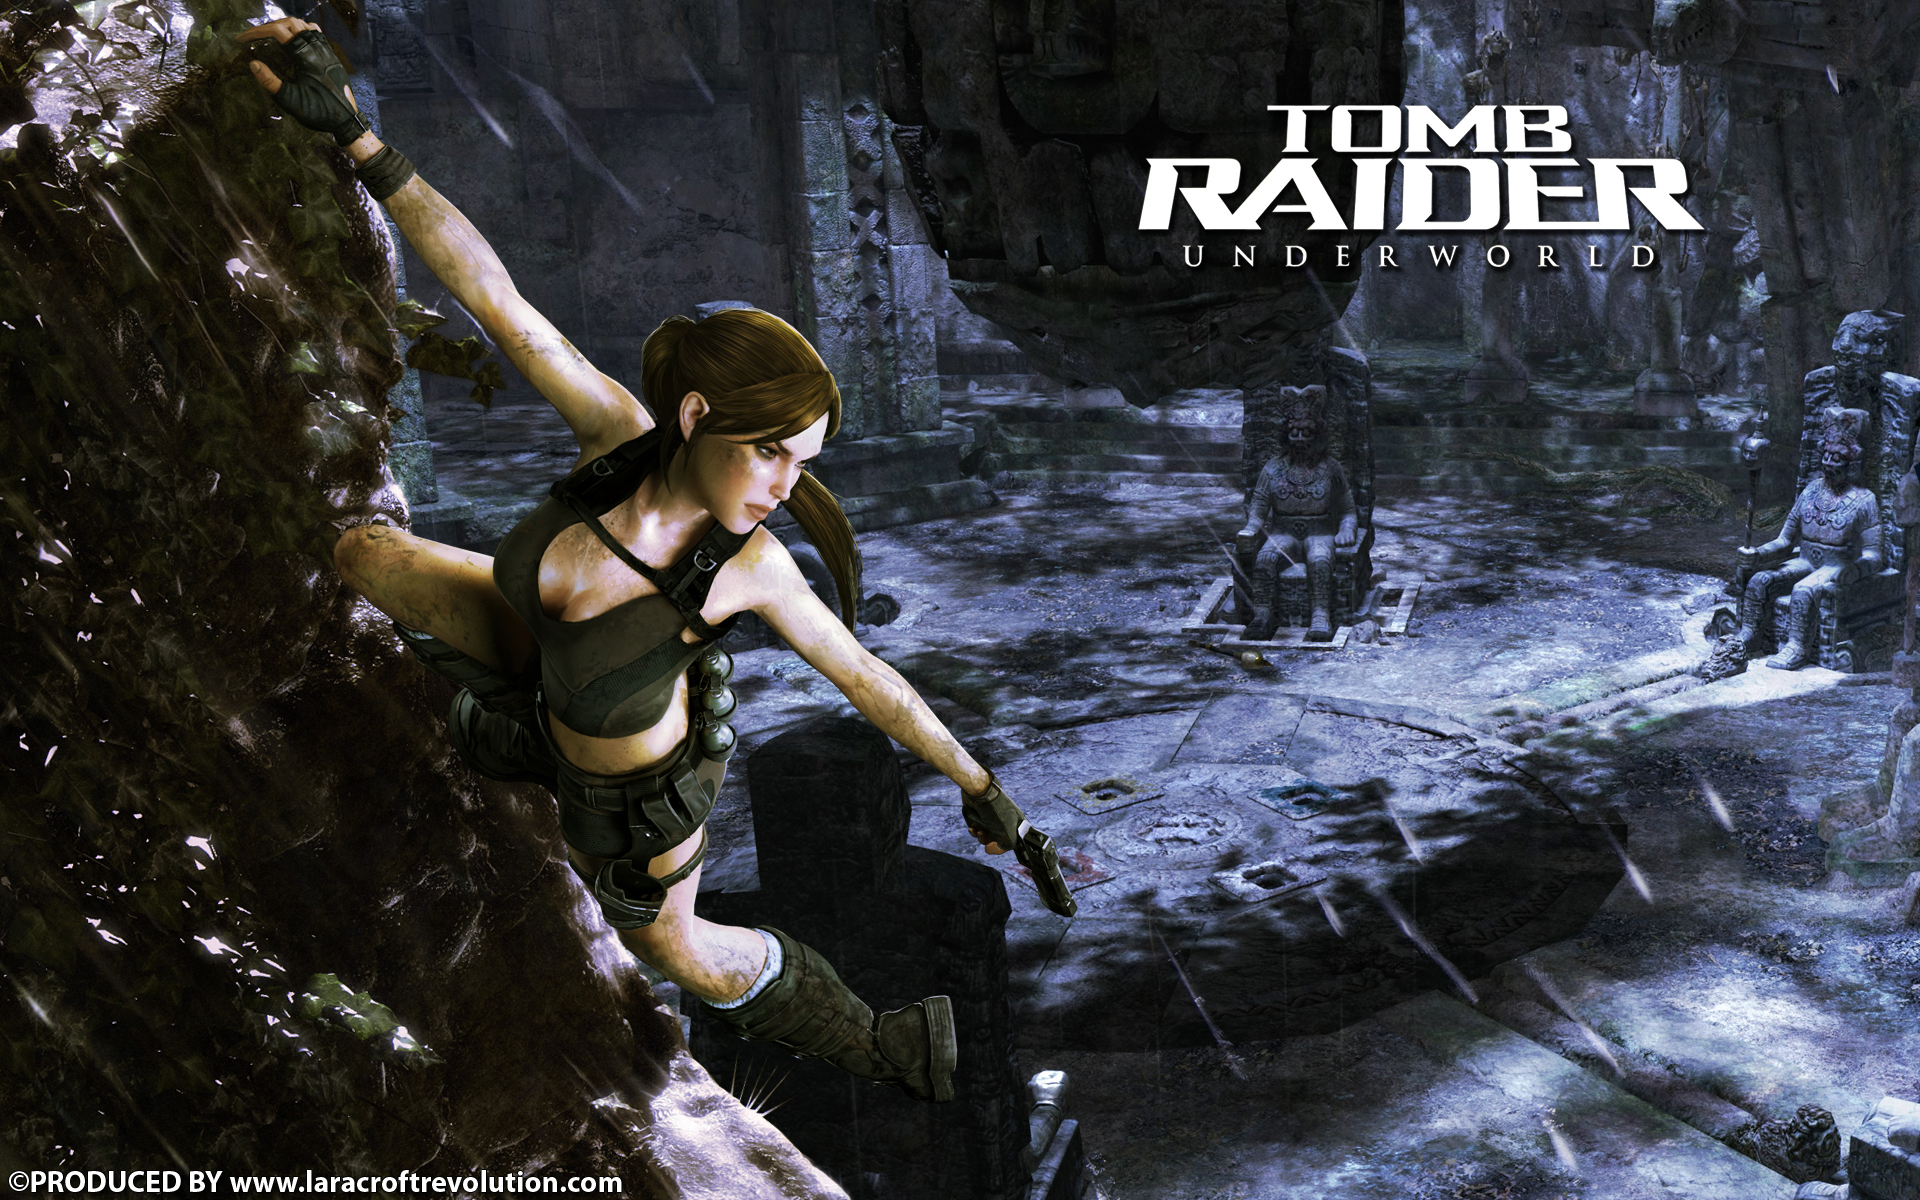 Lara Croft Revolution Tomb Raider Underworld Wallpaper